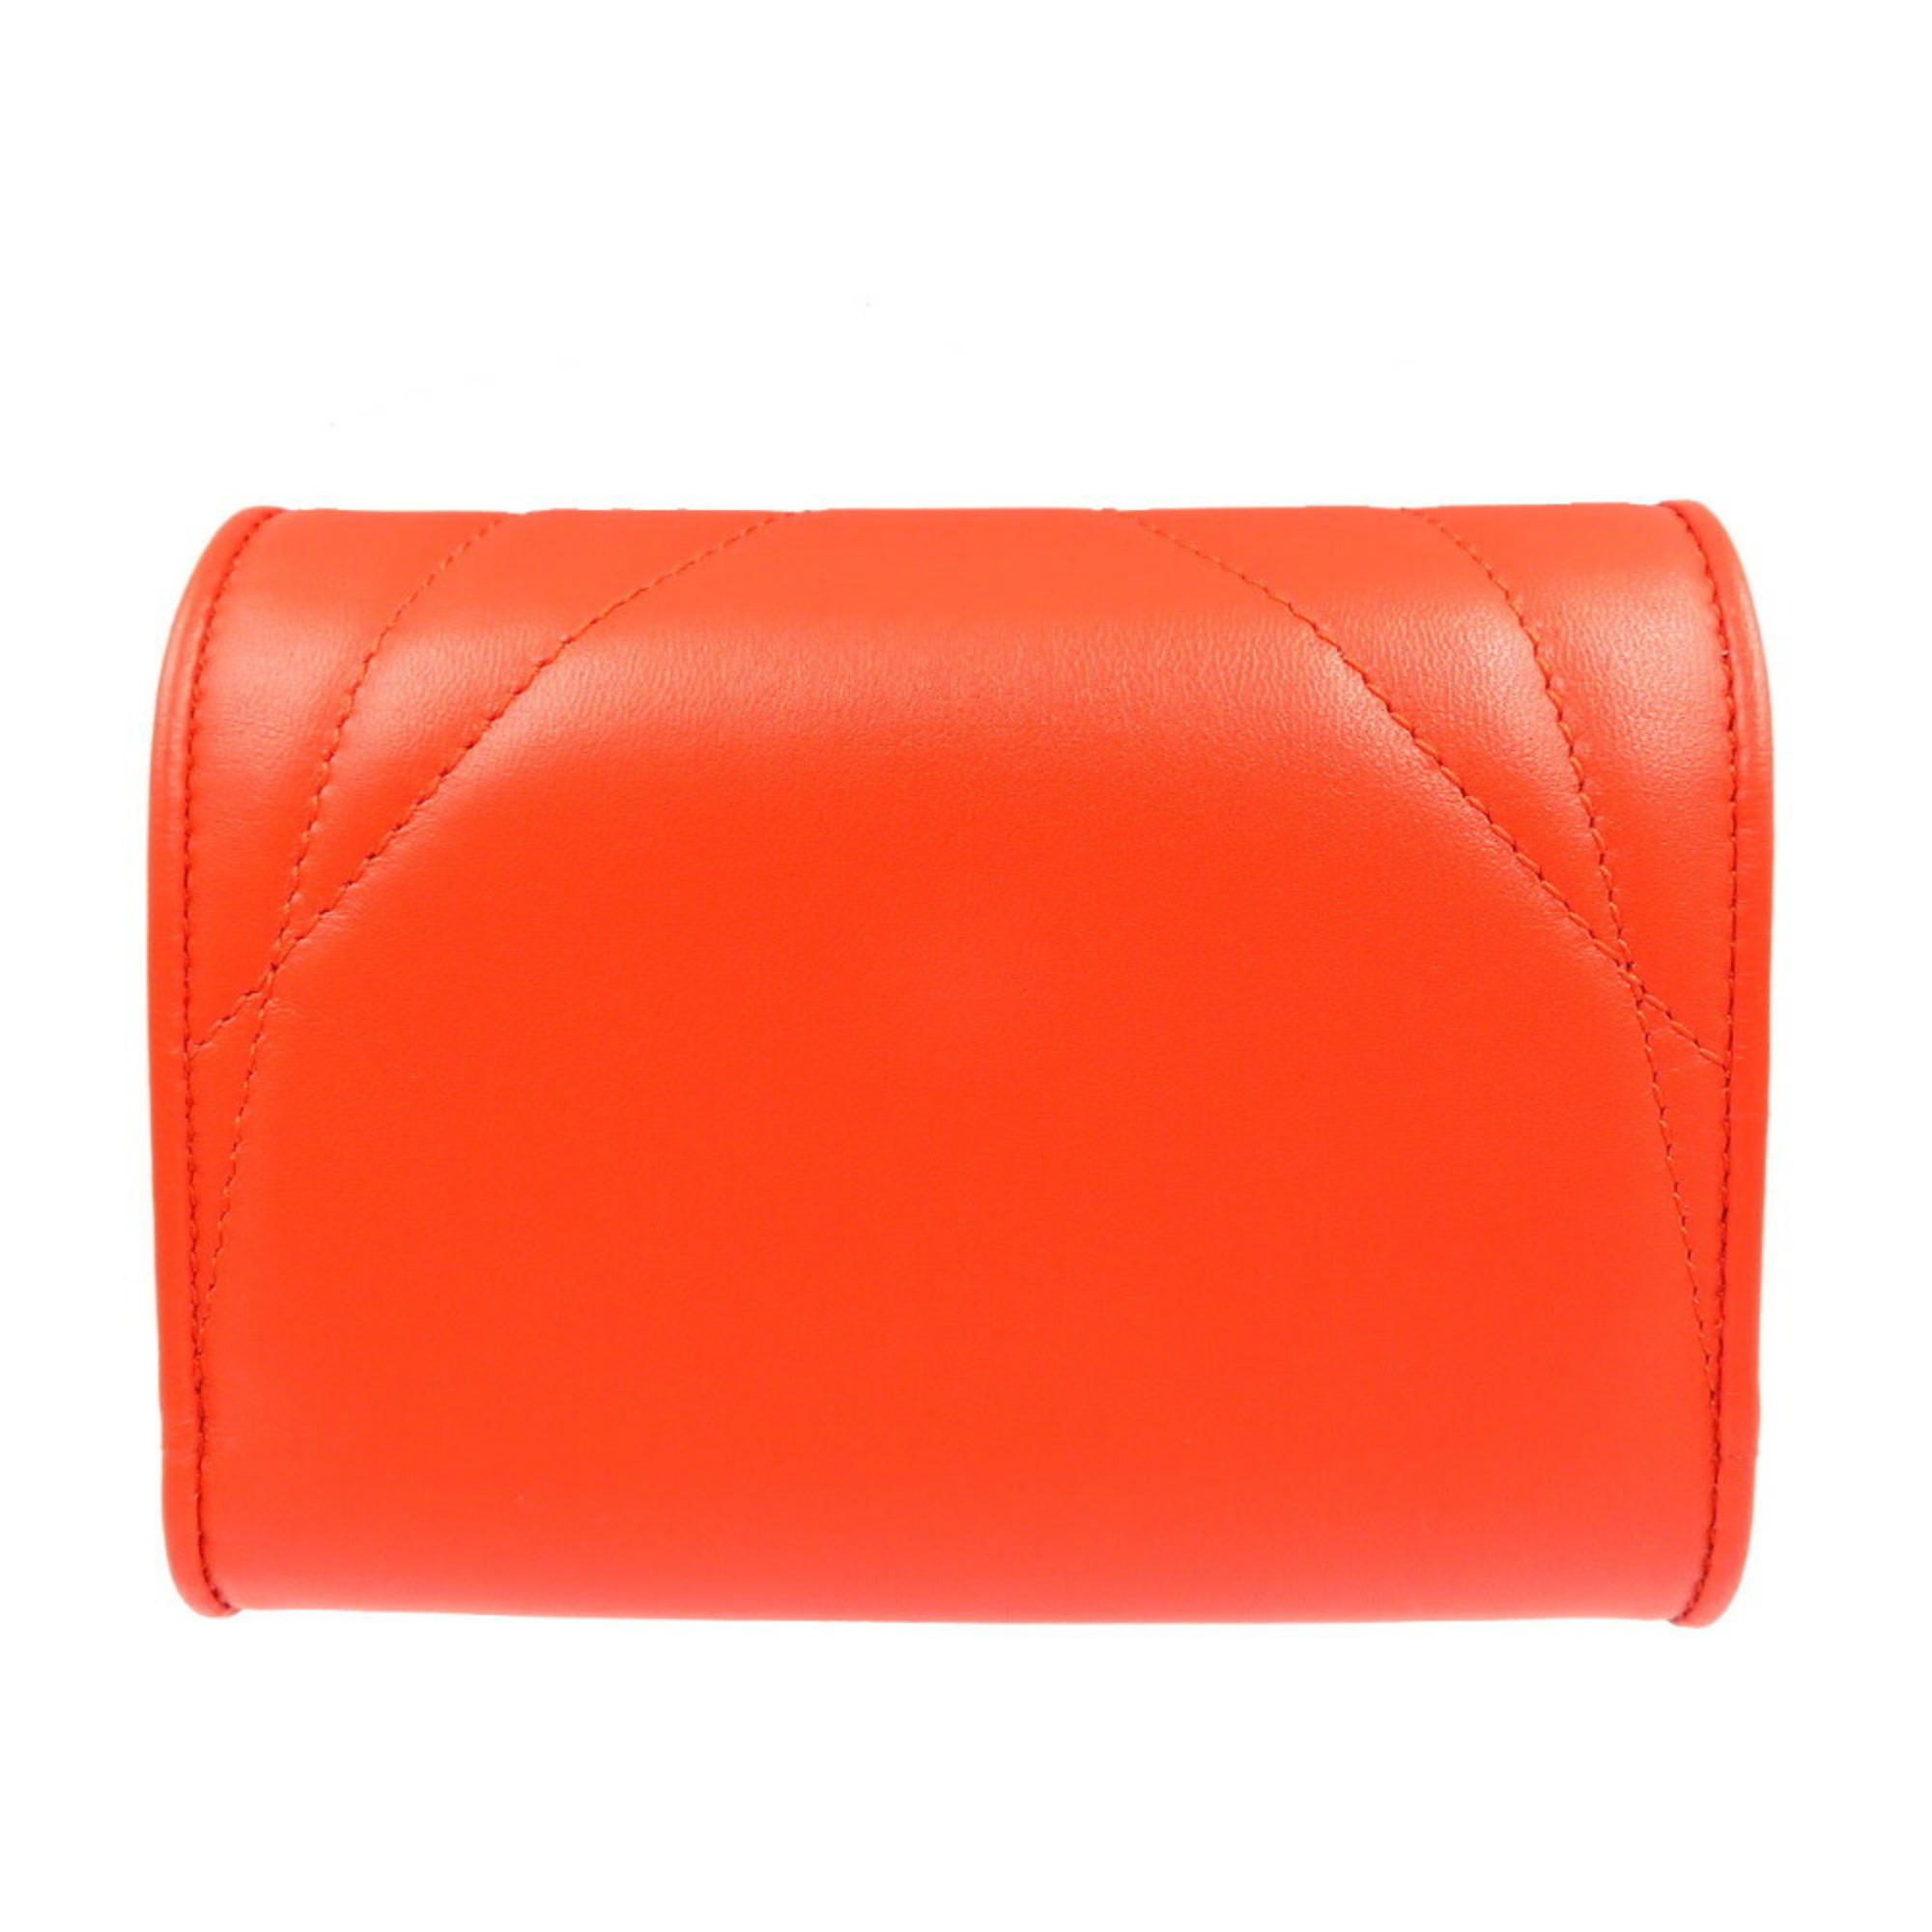 Dolce & Gabbana Devotion Small Continental Wallet Lambskin Orange Tri-fold 0005DOLCE&GABBANA